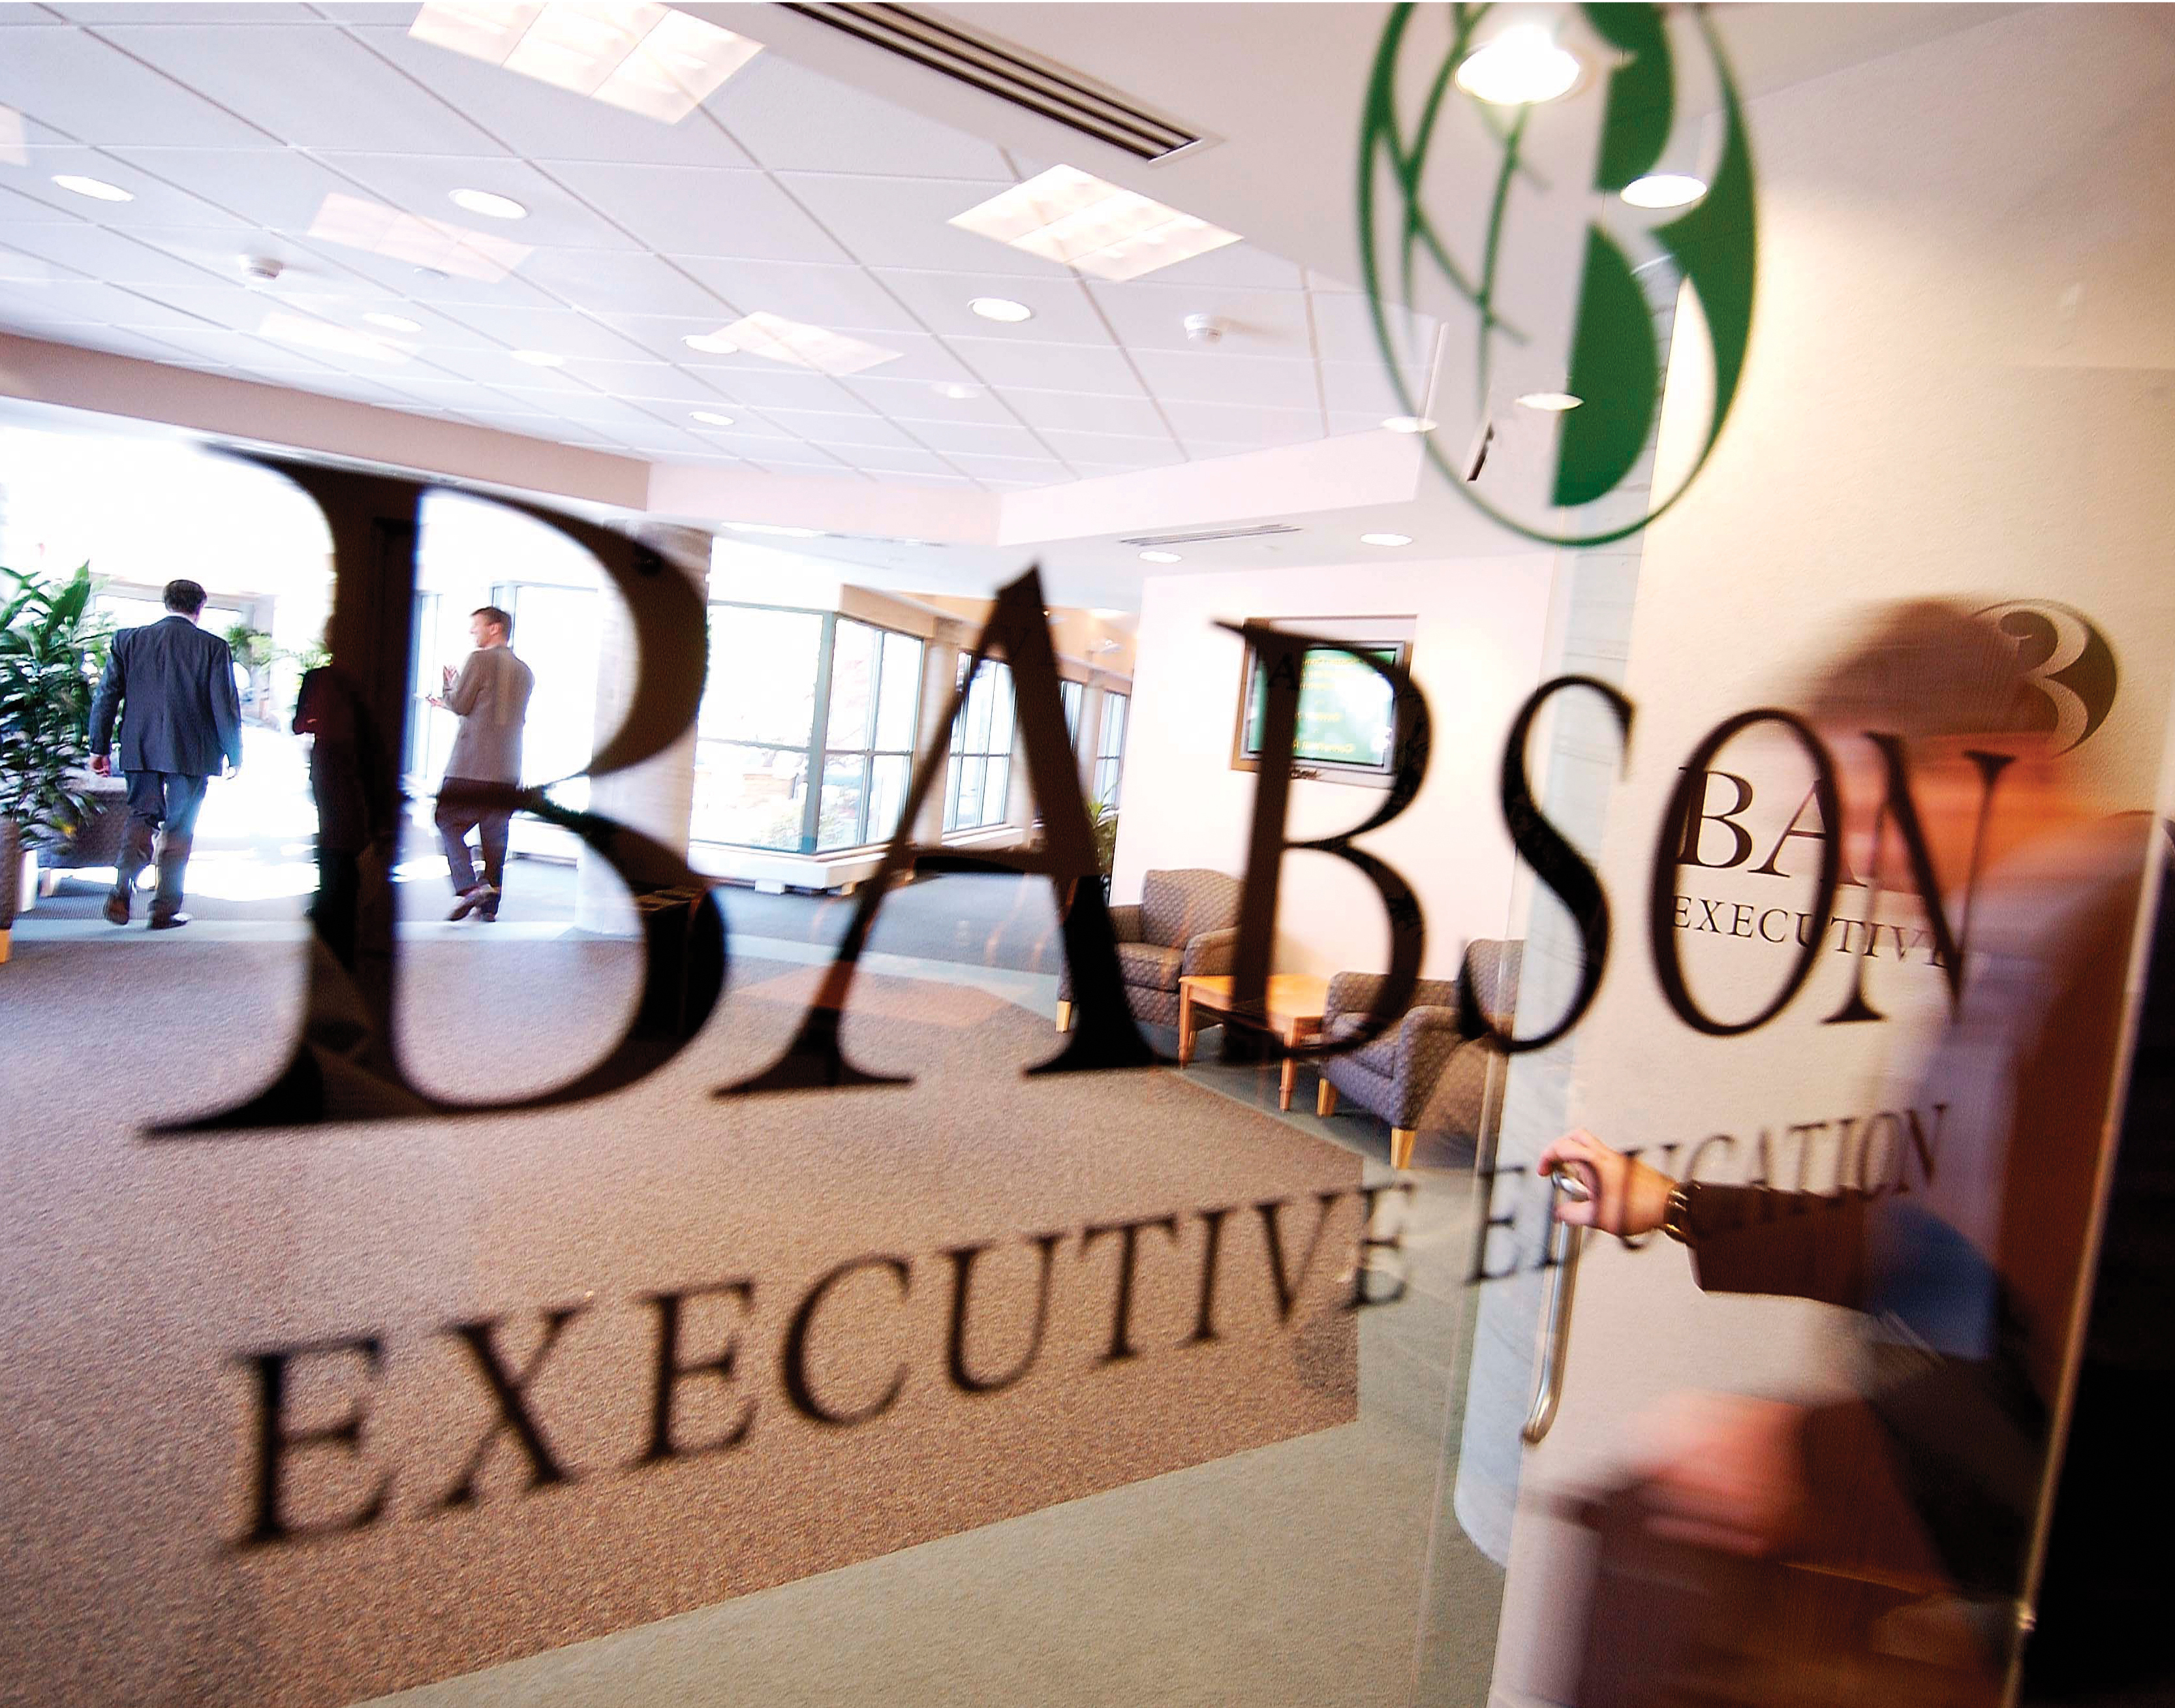 Babson Executive Education